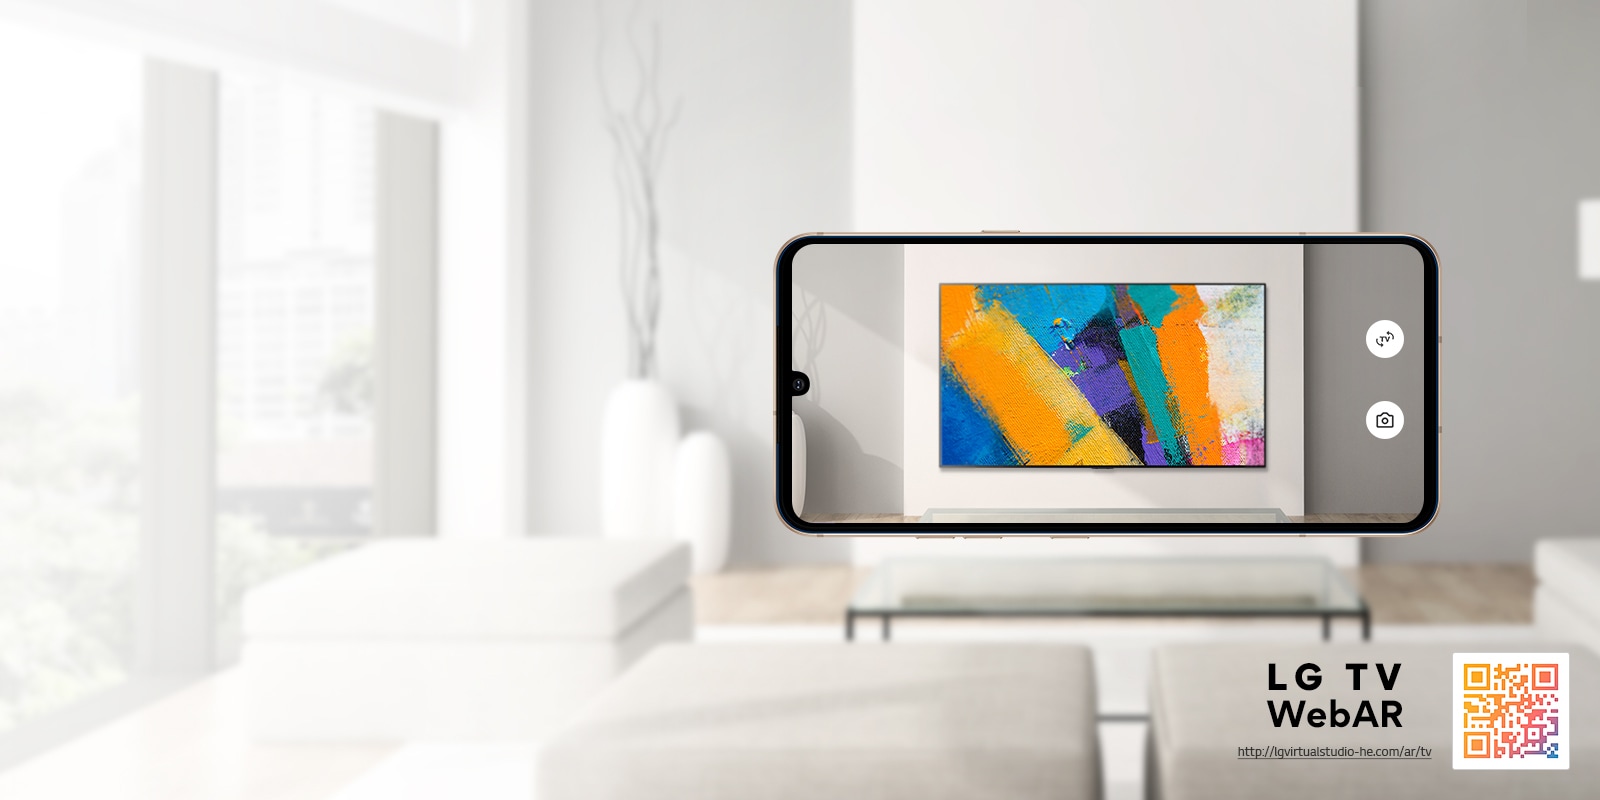 Spletna AR simulacija LG OLED TV.  Slike iz mobilnega telefona se prekrivajo z minimalističnim prostorom.  Spodaj desno je QR koda.